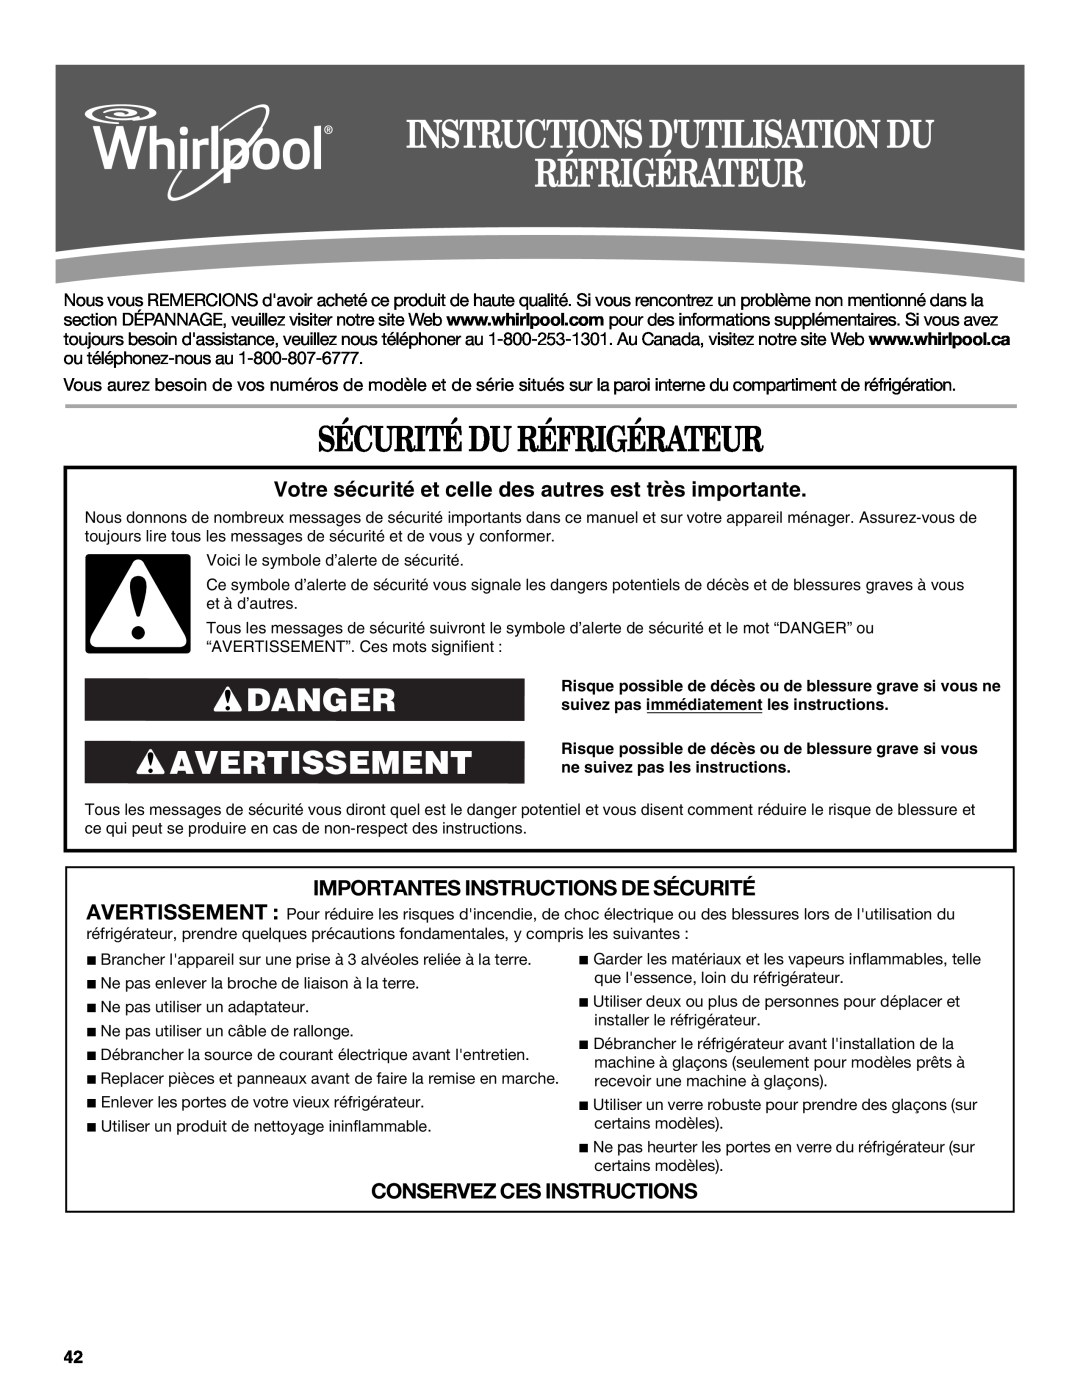 Whirlpool W10422737A Instructions Dutilisation Du Réfrigérateur, Sécurité Du Réfrigérateur, Danger Avertissement 